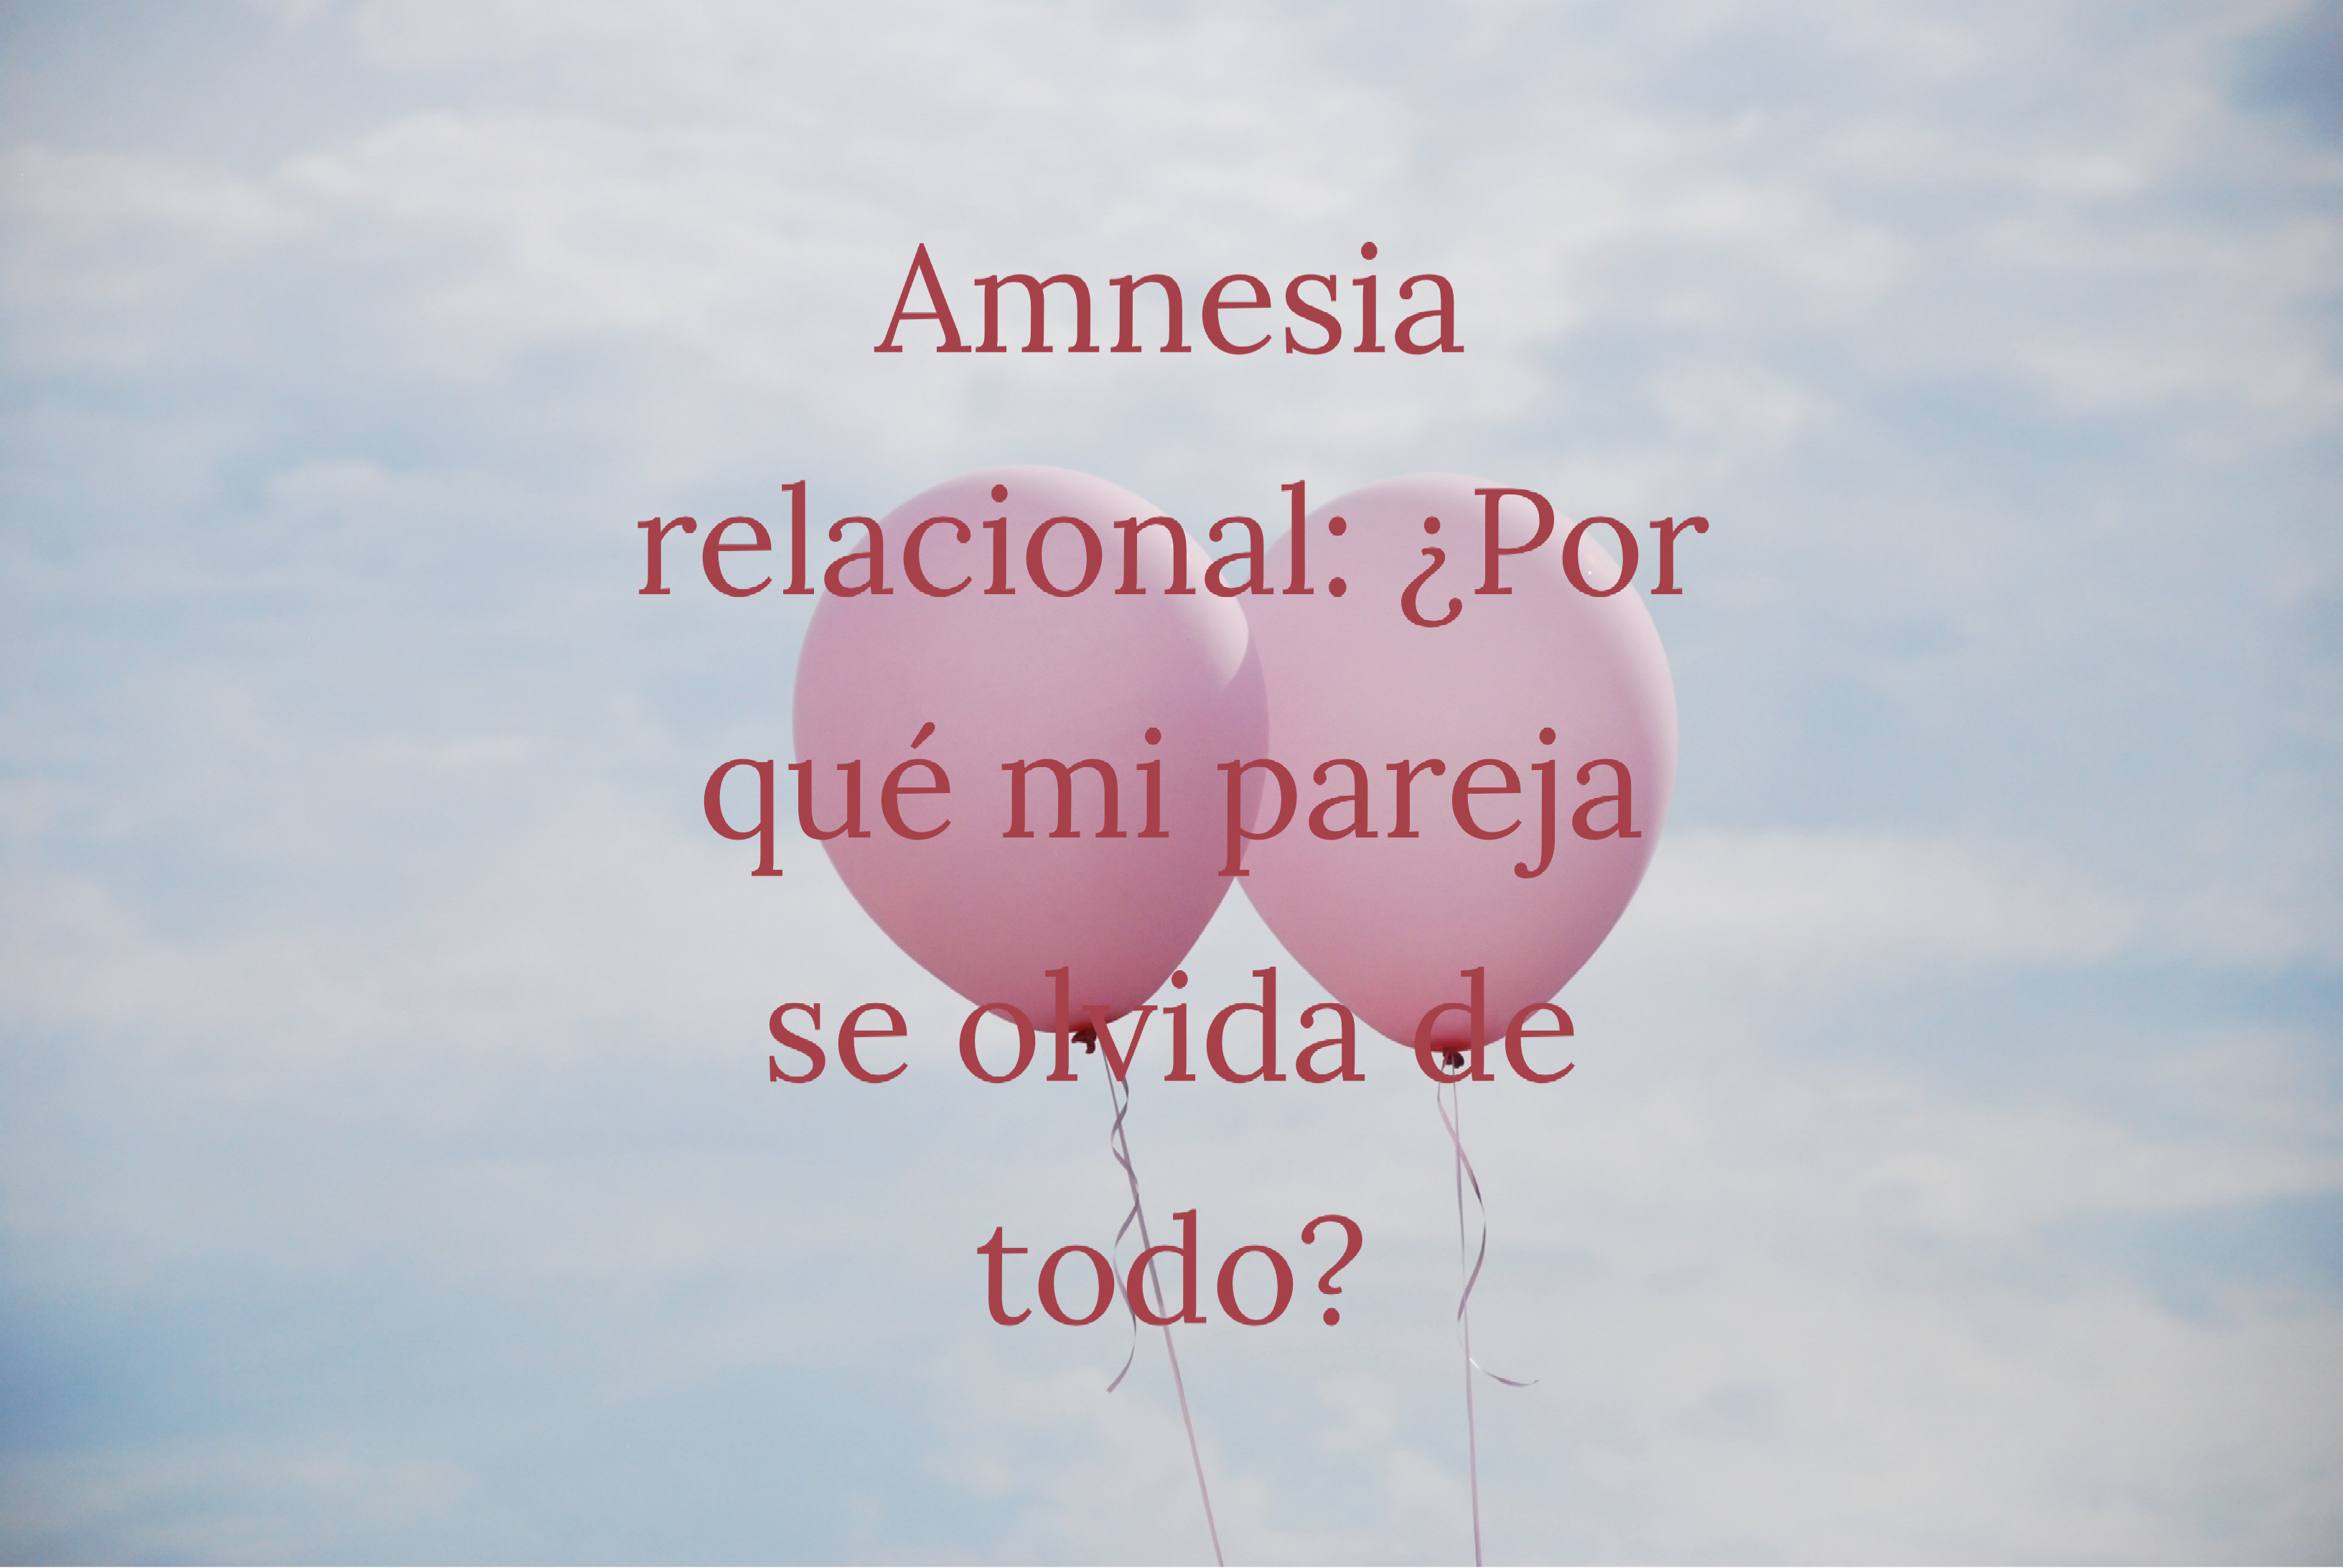 Amnesia relacional